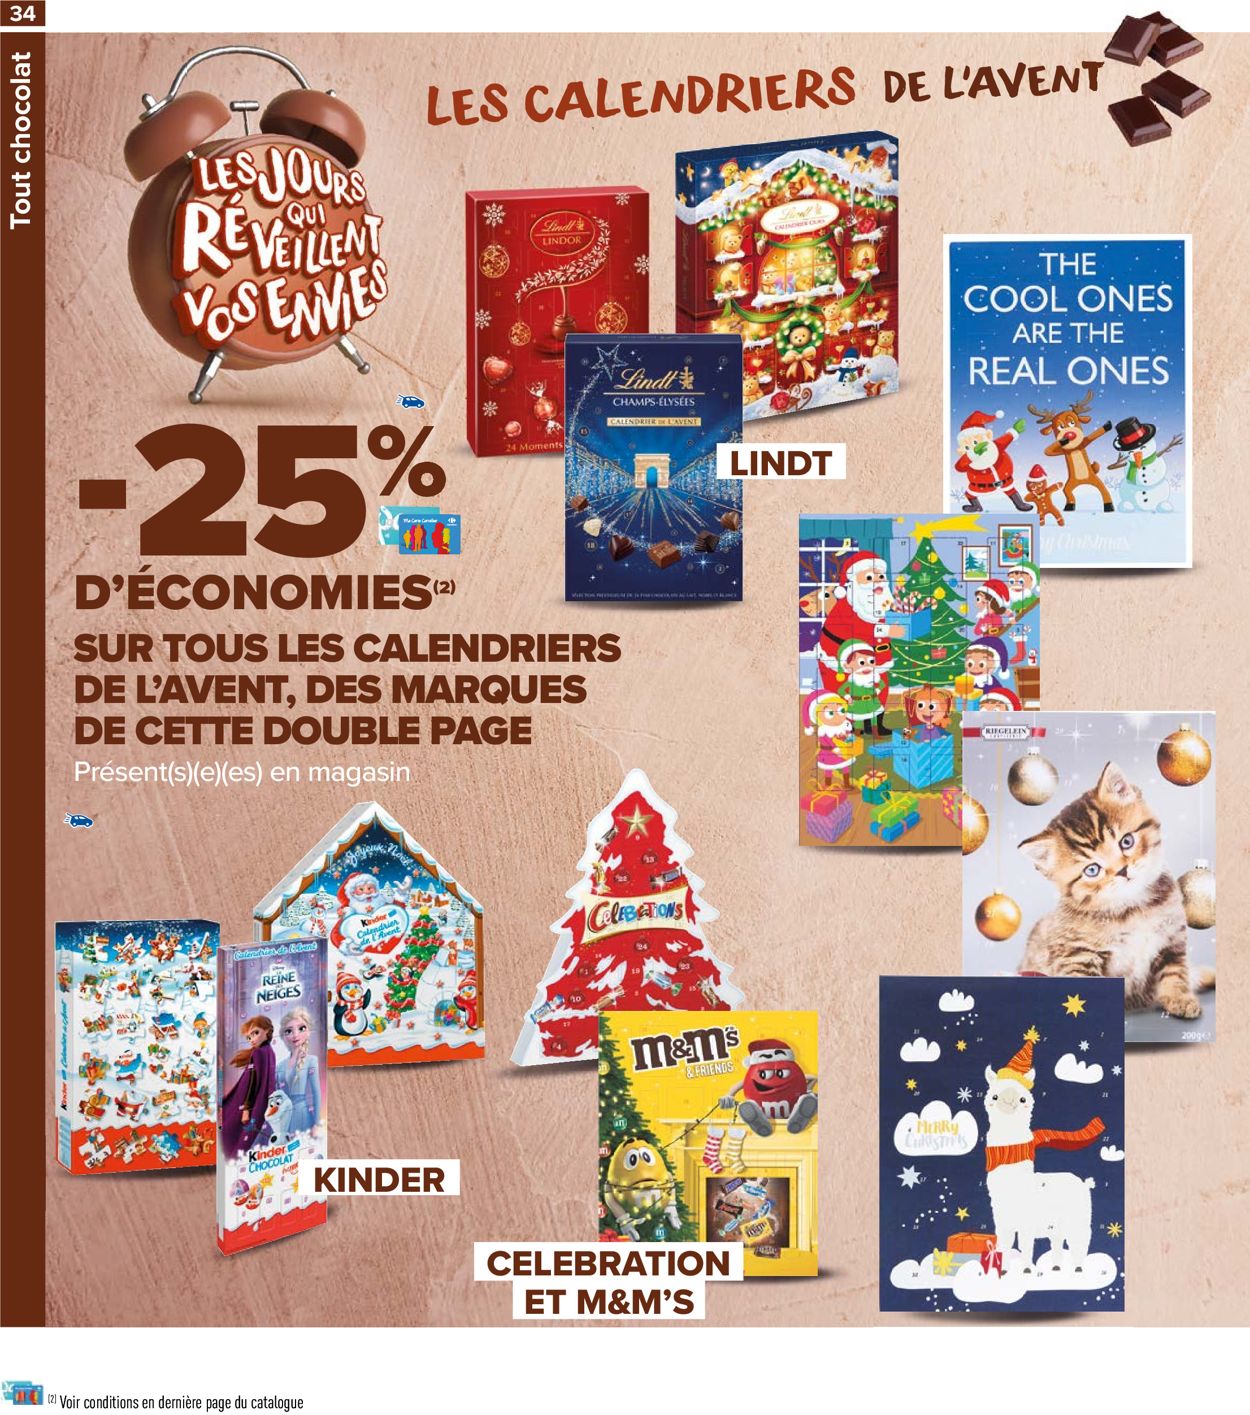 Carrefour Catalogue du 29.10.2021